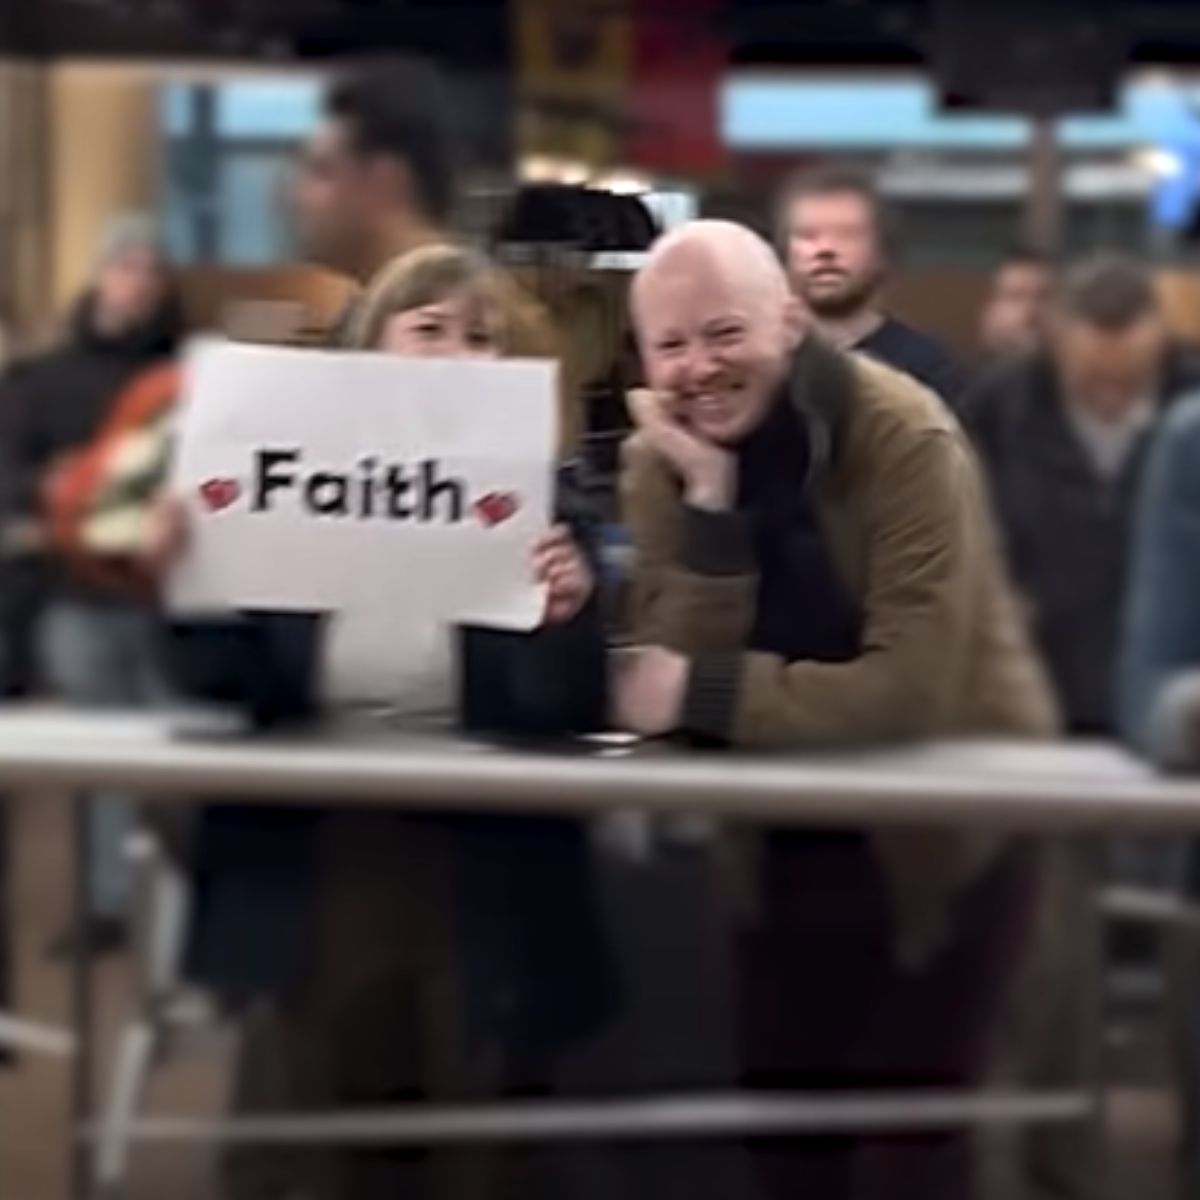 couple holdin a sign saying faith